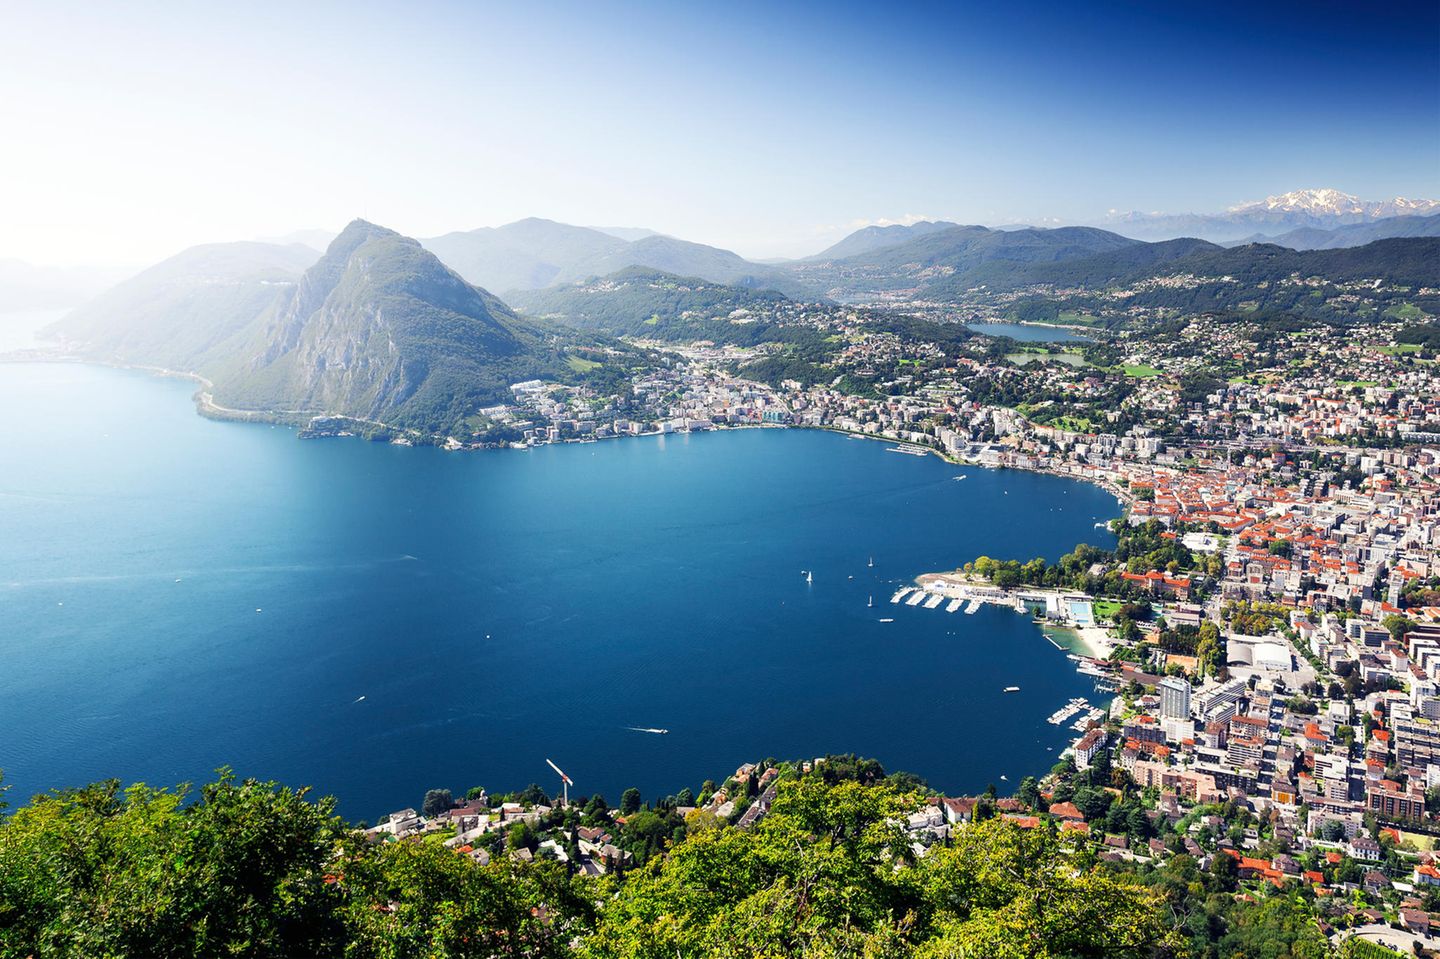 Blick auf die Stadt Lugano und den See im Kanton Tessin